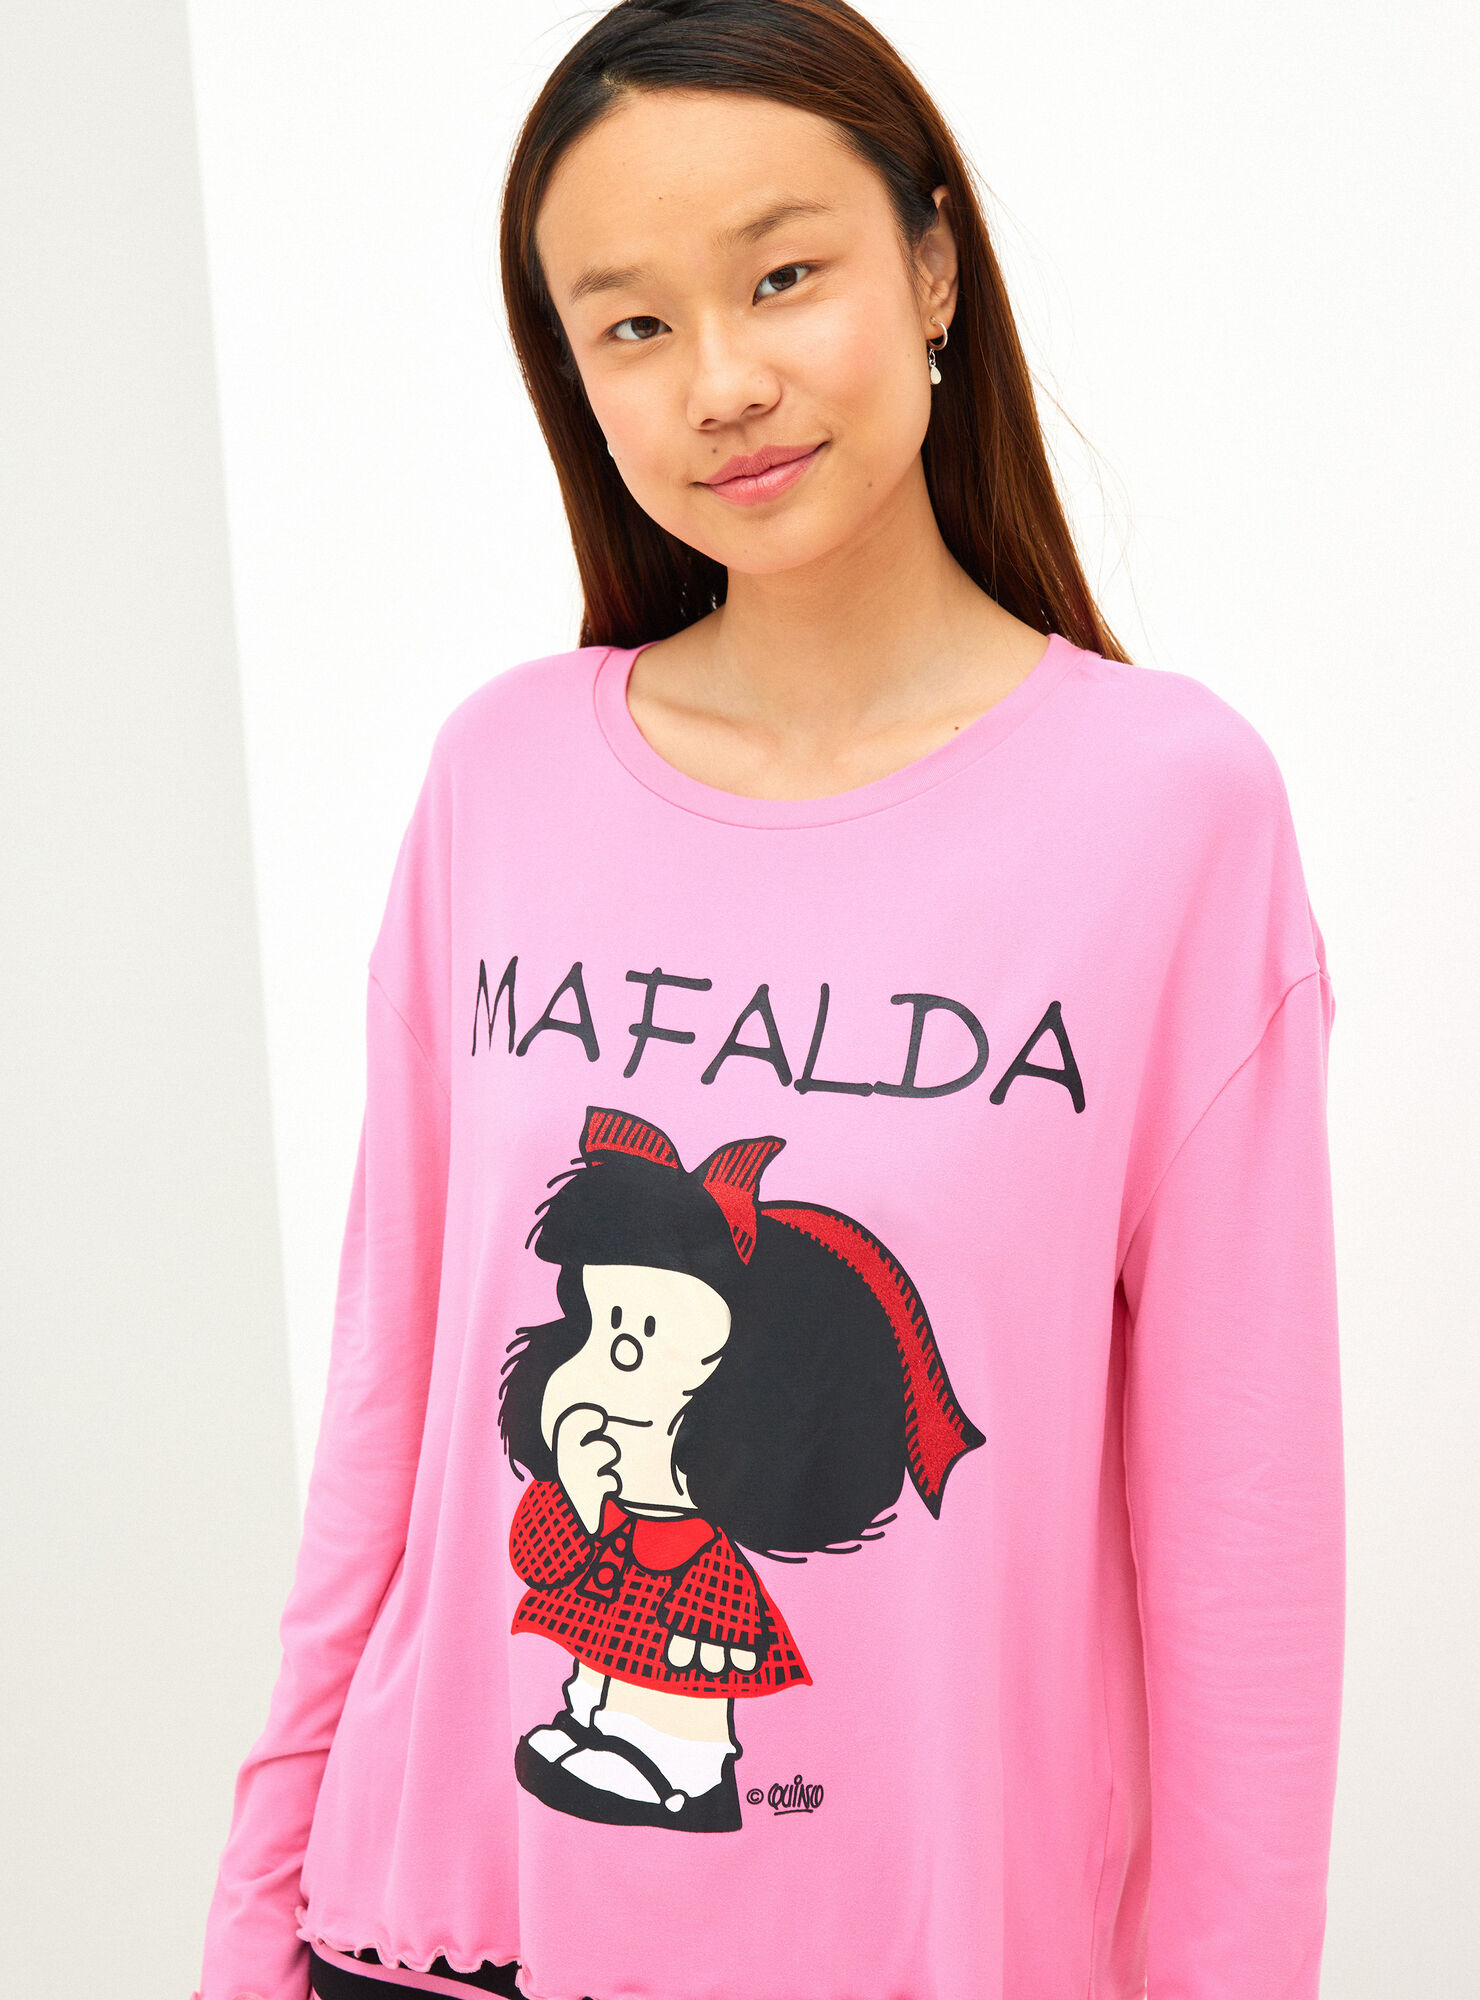 Mafalda Clásica - Pijamas | Paris.cl